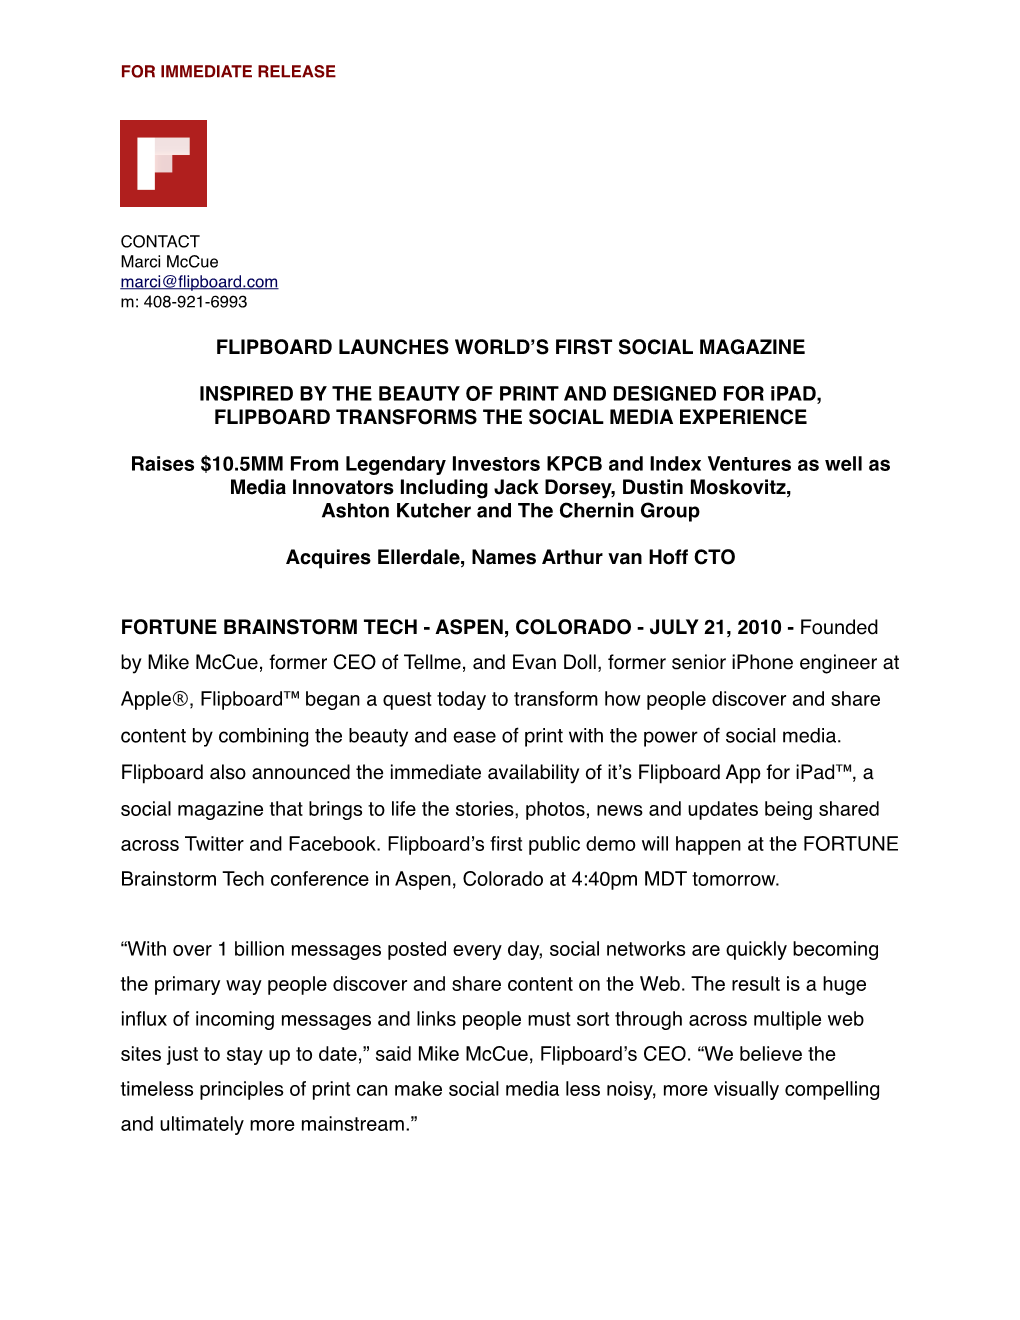 Flipboard Press Release FINAL2